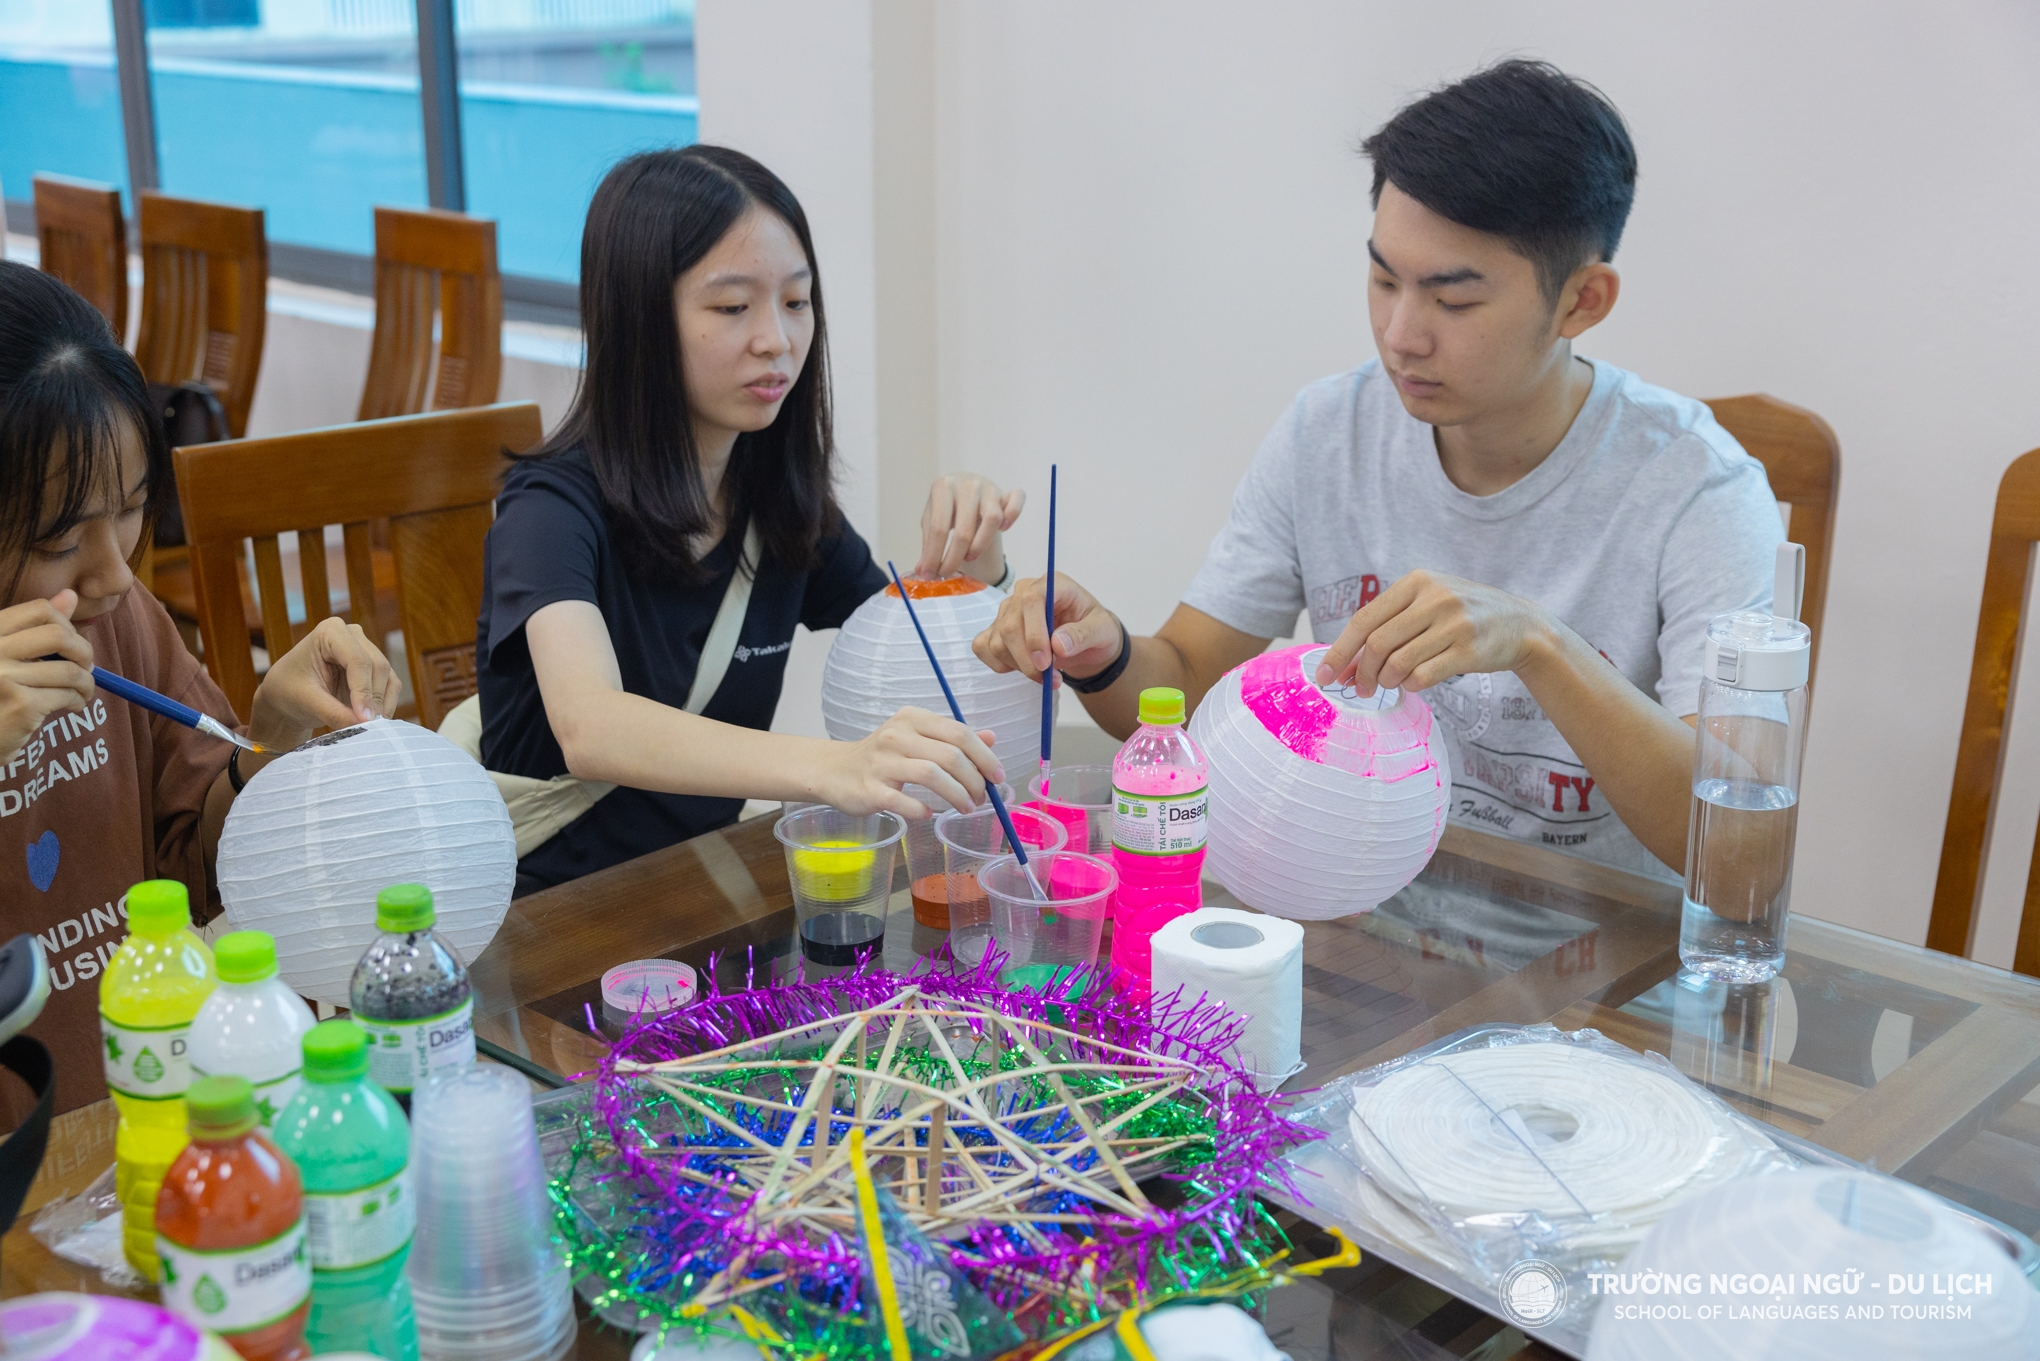 Học viên, sinh viên, chuyên gia, tình nguyện viên người nước ngoài hào hứng trải nghiệm văn hóa đón Tết Trung thu tại Đại học Công nghiệp Hà Nội